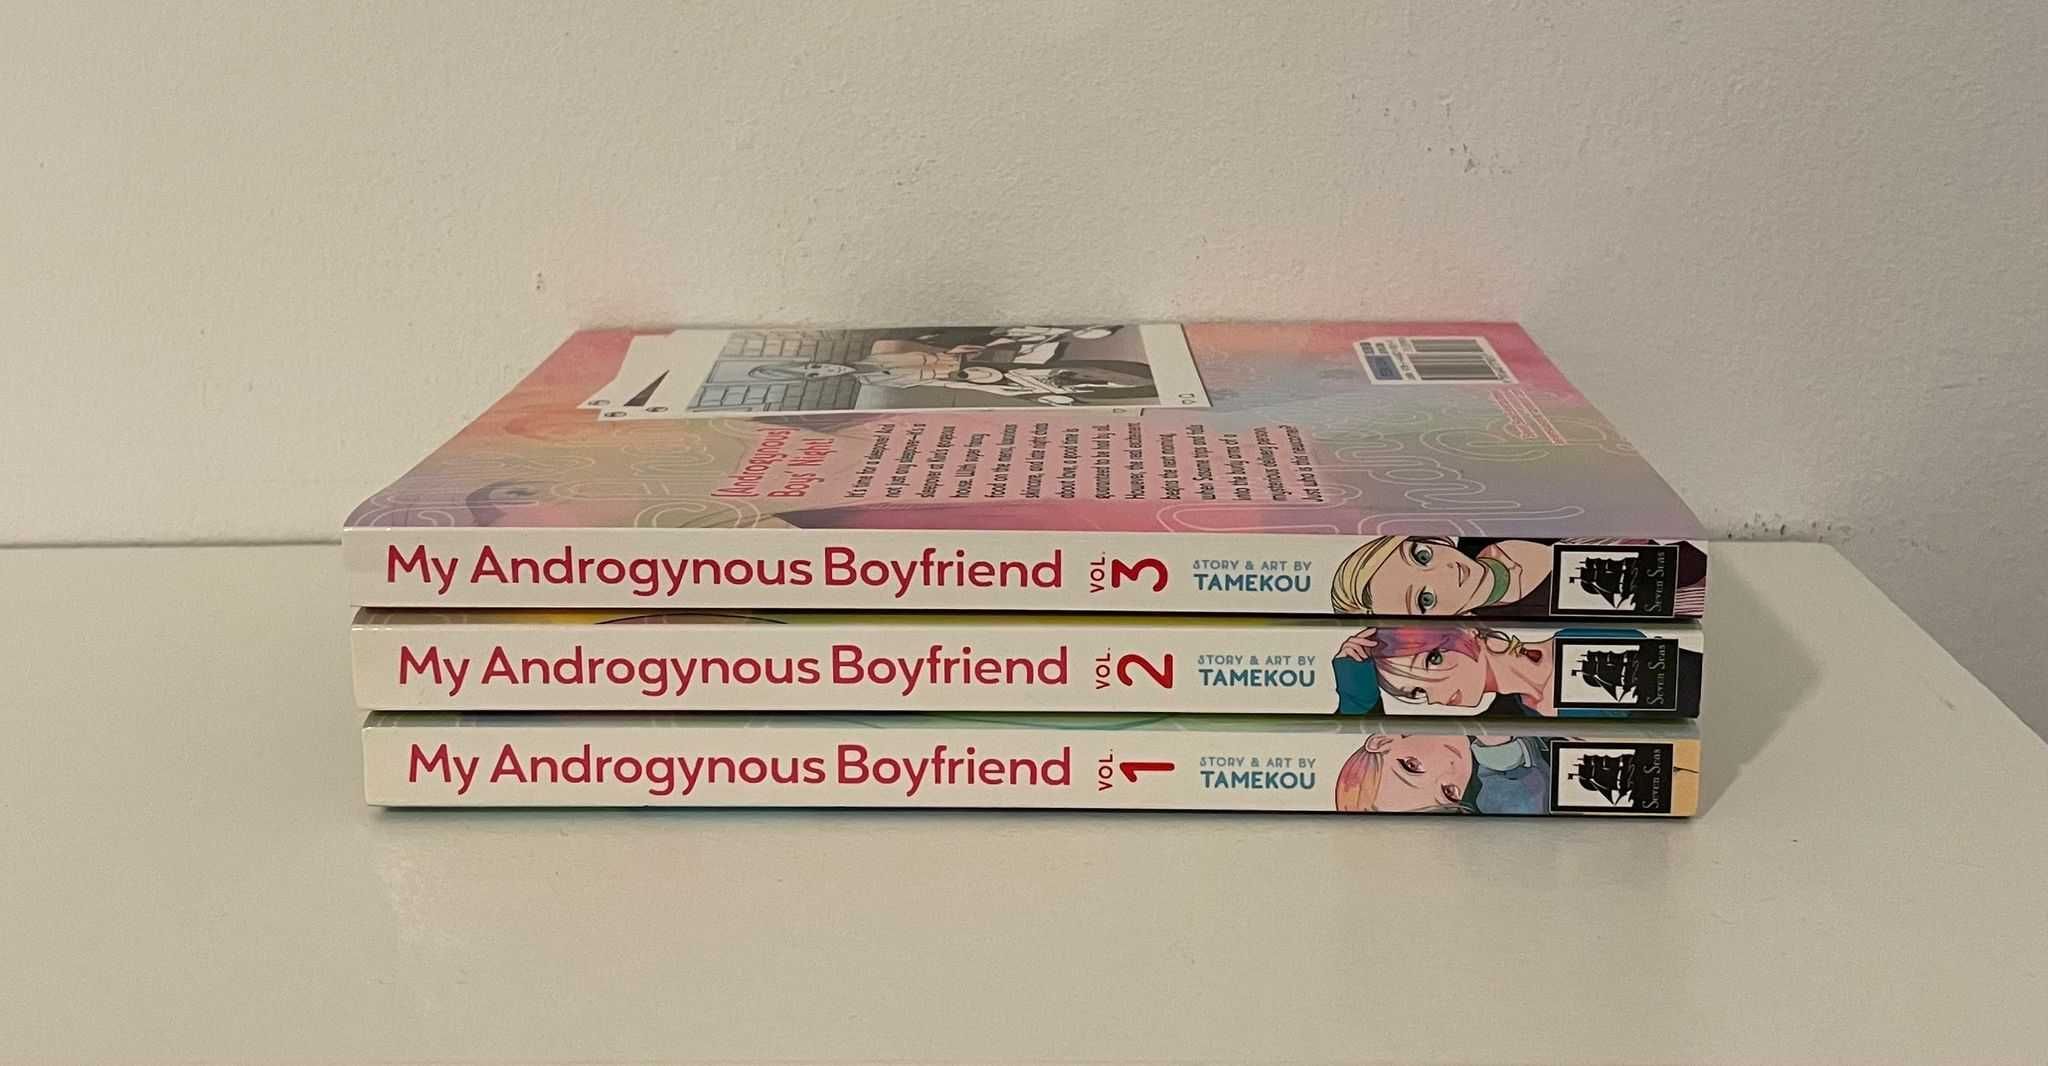 Manga "My Androgynous Boyfriend"